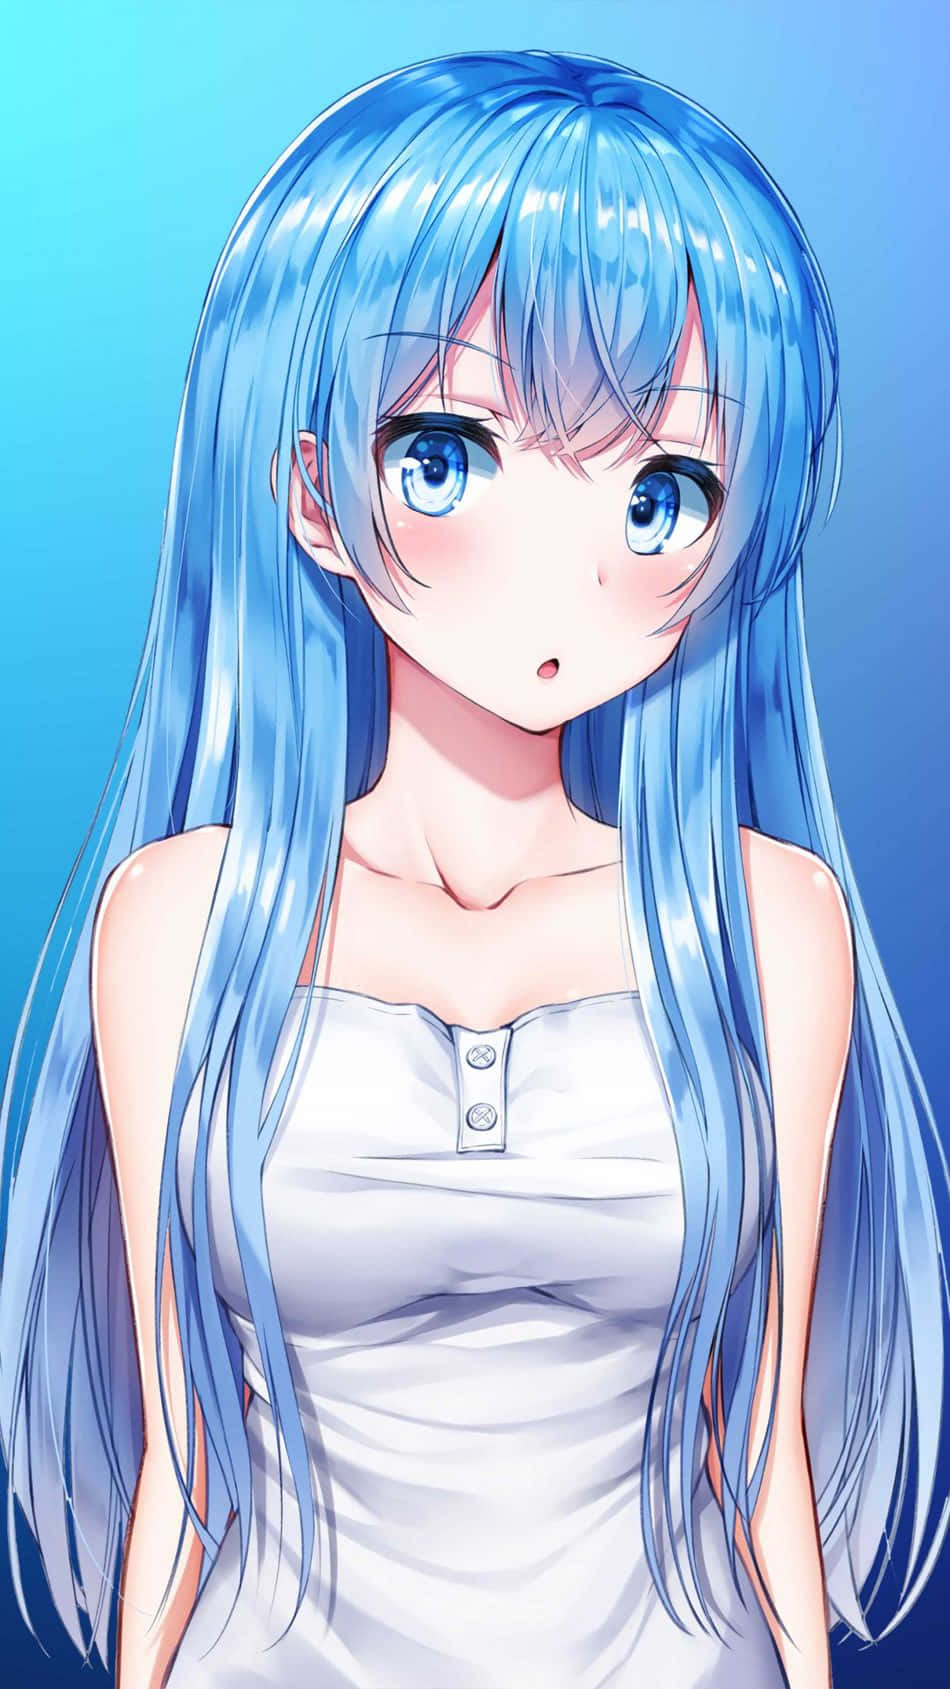 A Beautiful Anime Girl